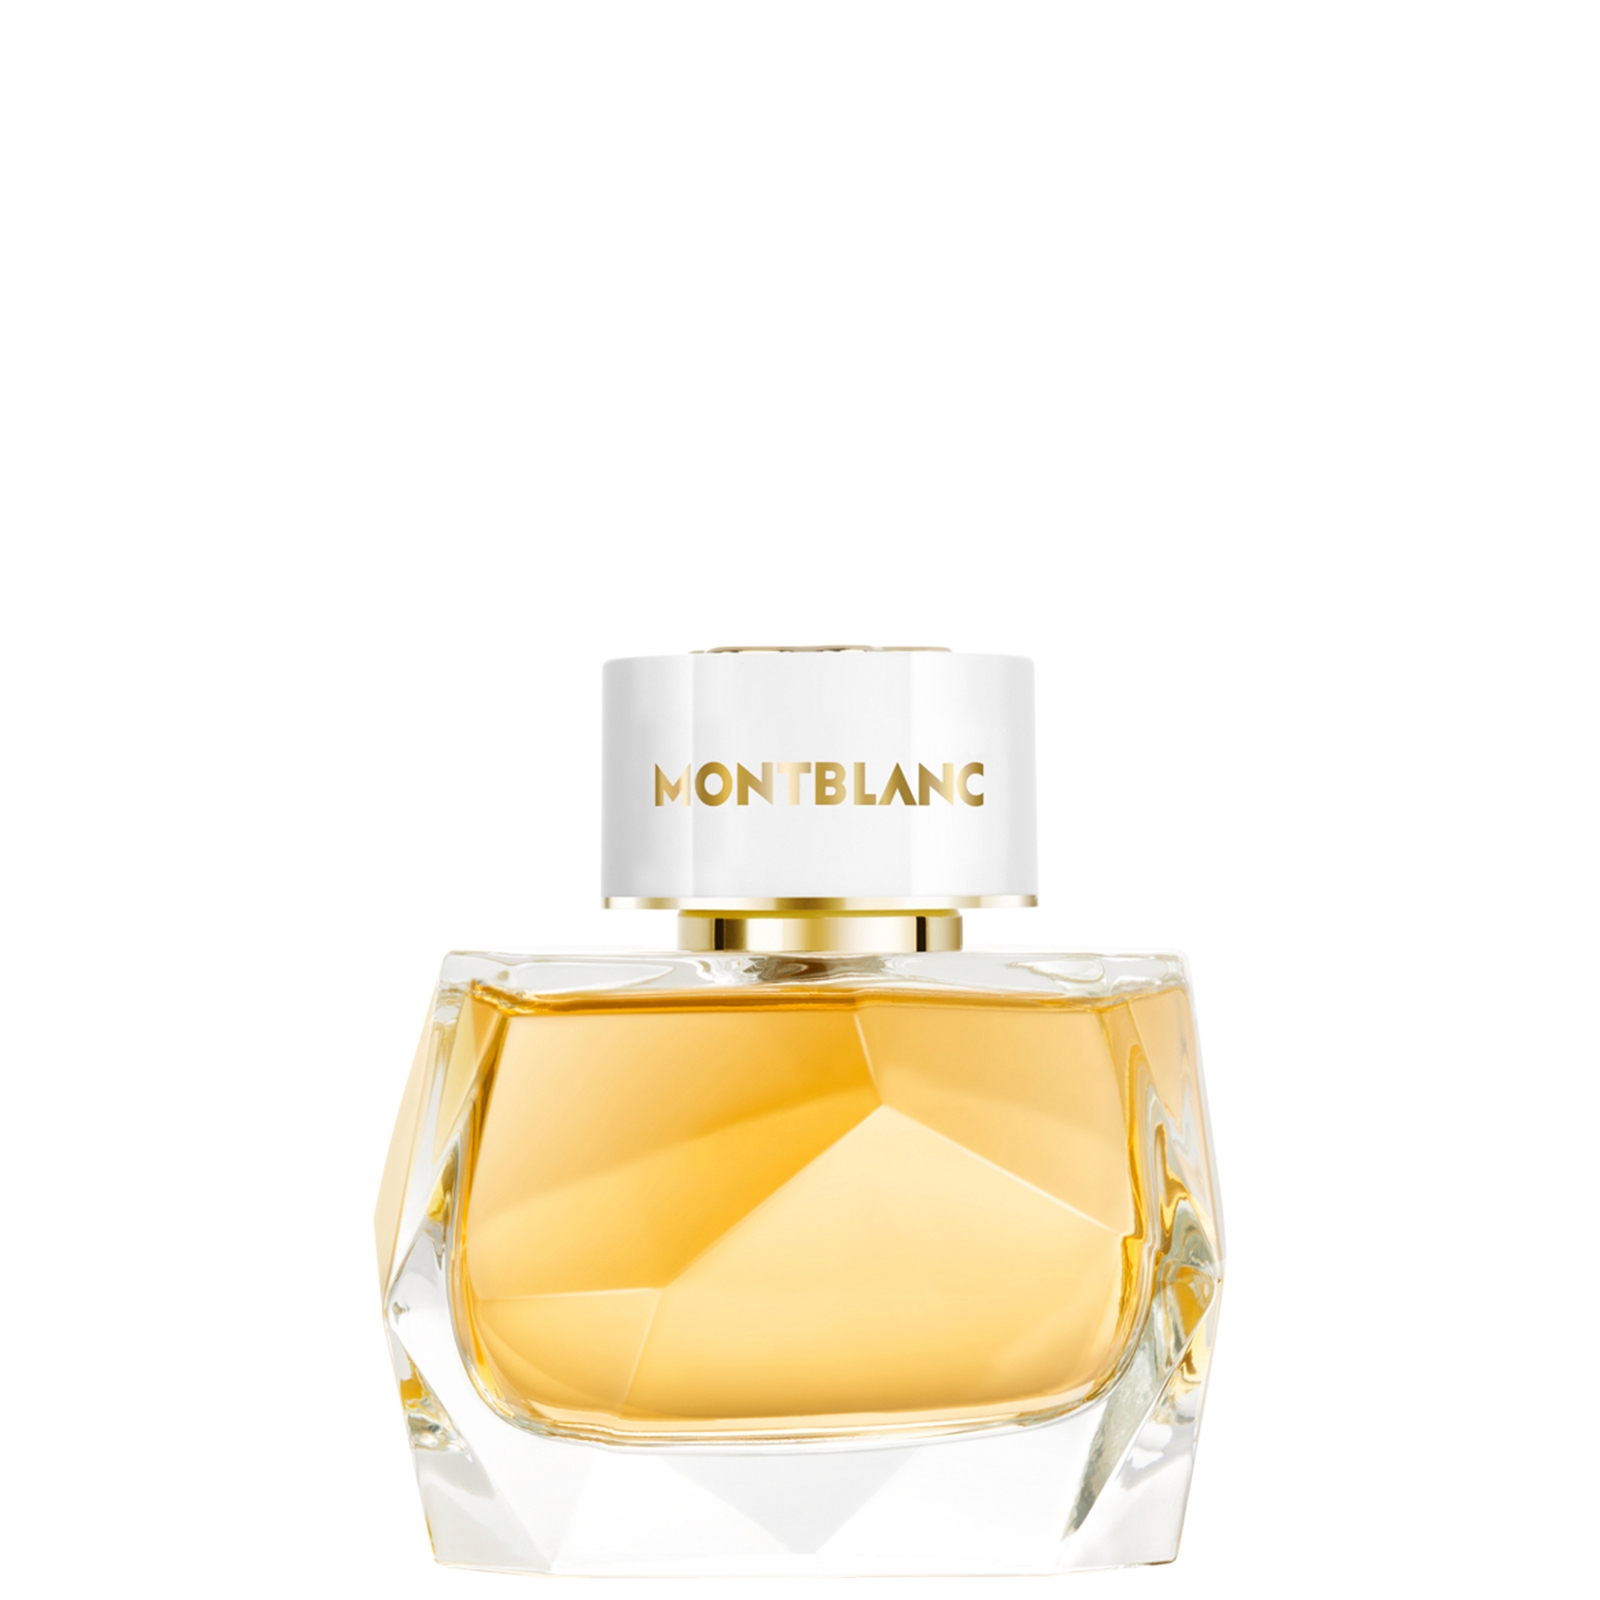 Photos - Women's Fragrance Mont Blanc Montblanc Signature Absolue Eau de Parfum 50ml MB024A02 